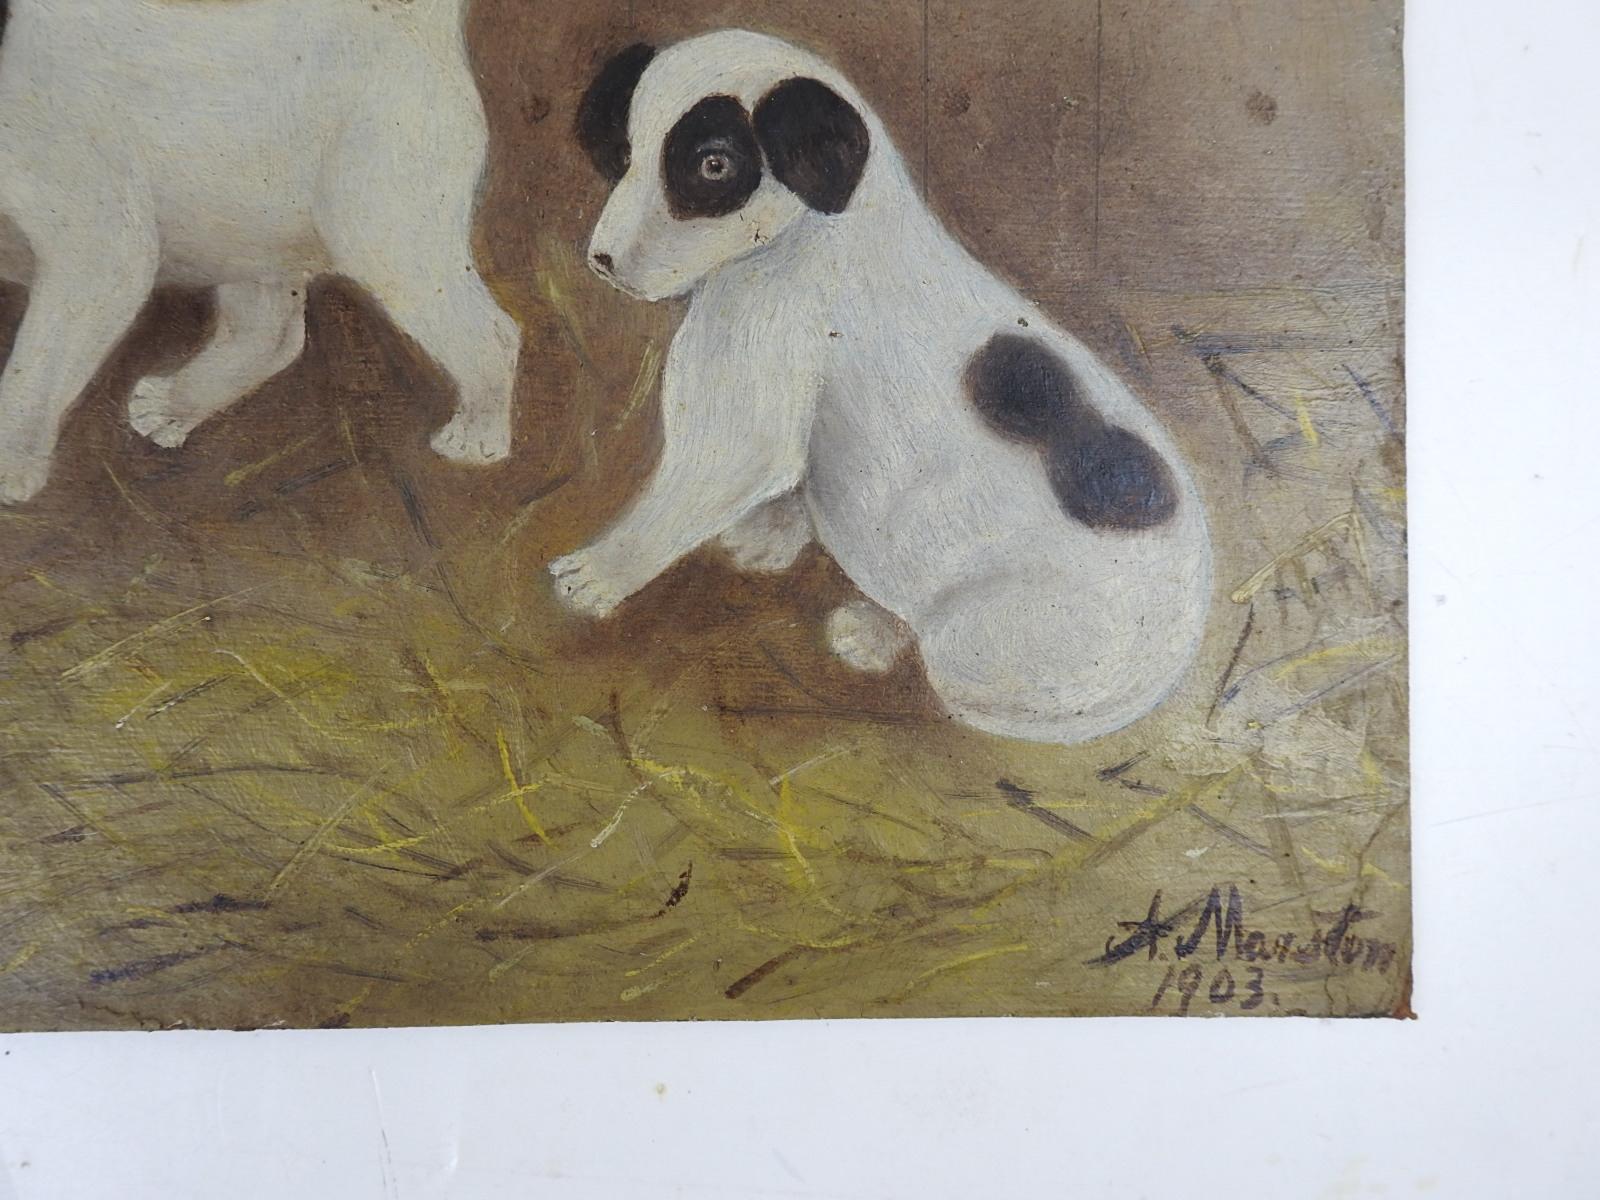 Antike 1903 Öl auf Künstler Bord Volkskunst Gemälde von einem Paar von Welpen und eine Maus.  Sie sehen aus wie kleine Jack-Russell-Terrier und befinden sich in einer Scheune, und das Mauseloch ist auf der linken Seite.  Signiert A. Marston und